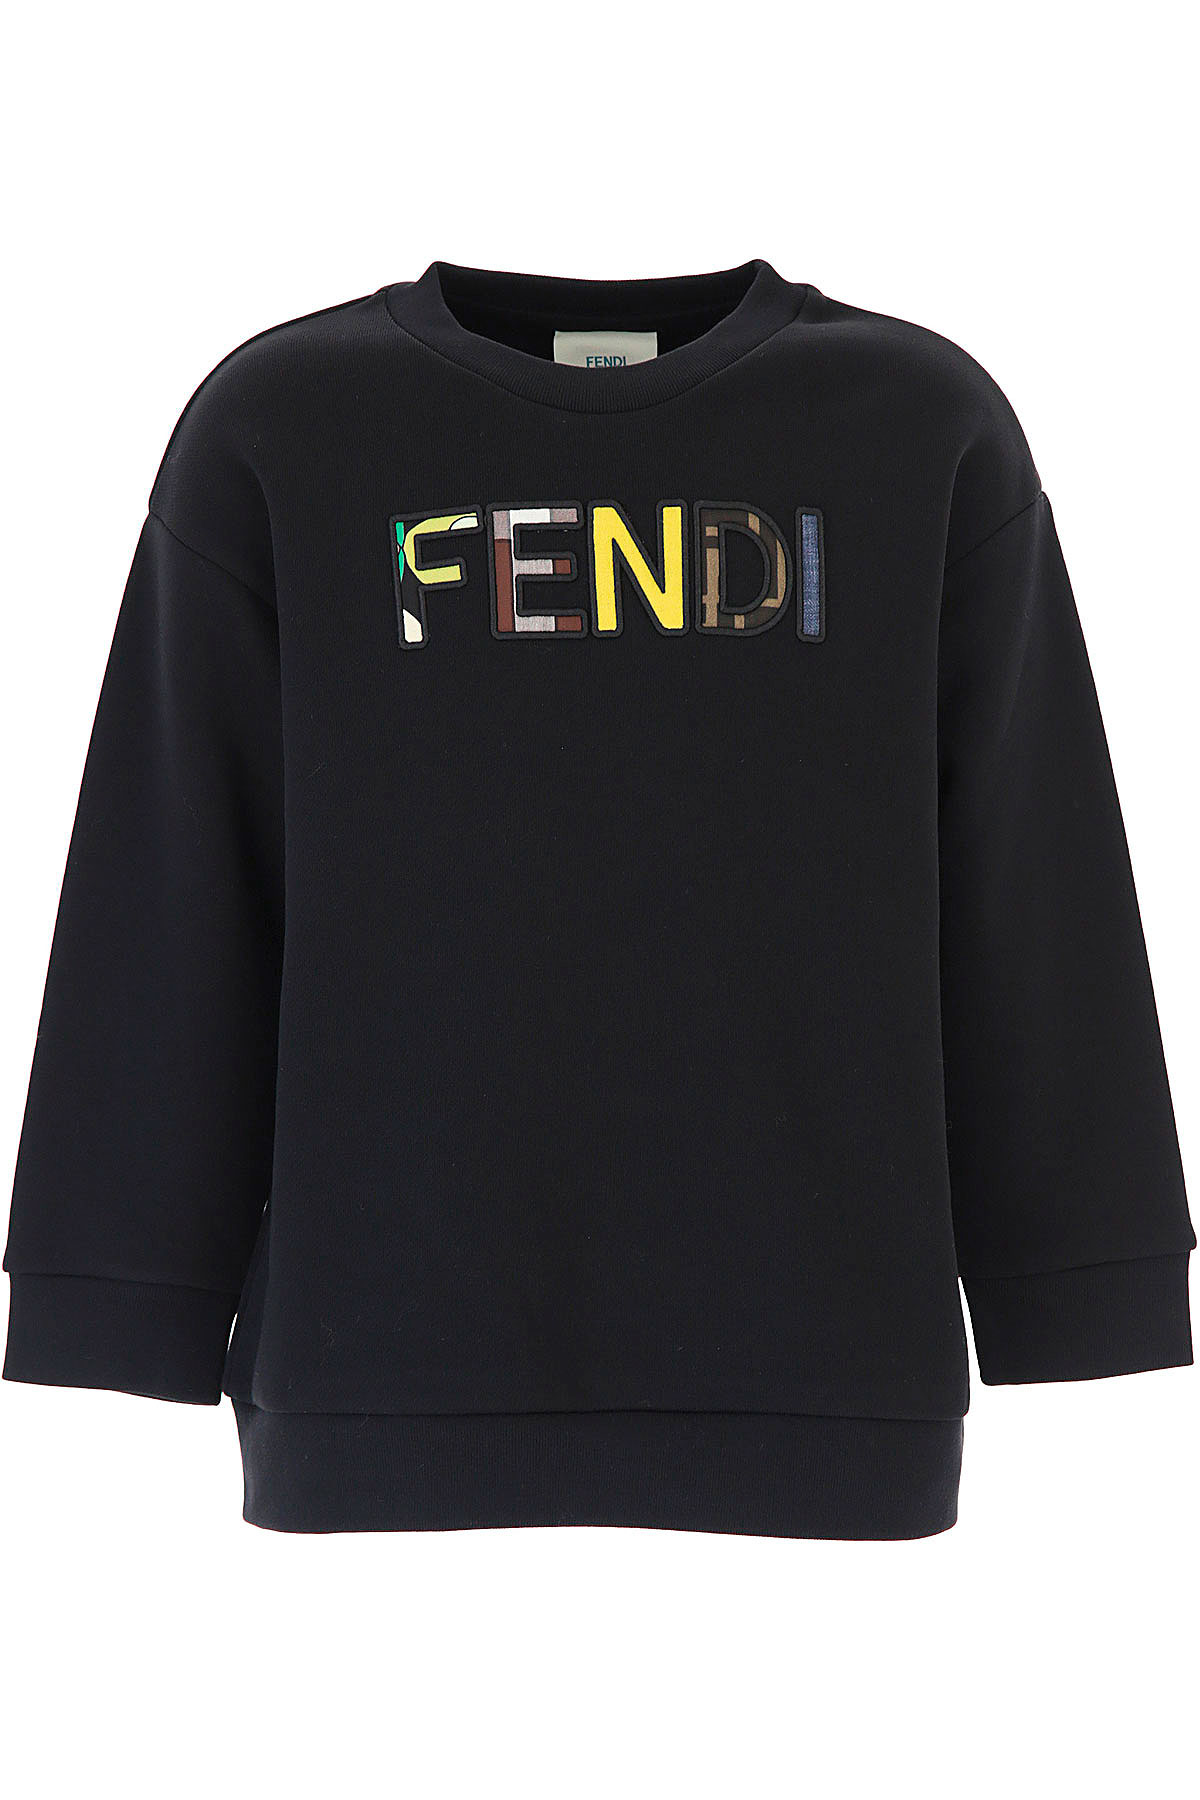 Kidswear Fendi, Style code: juh029-ag18-f0gme